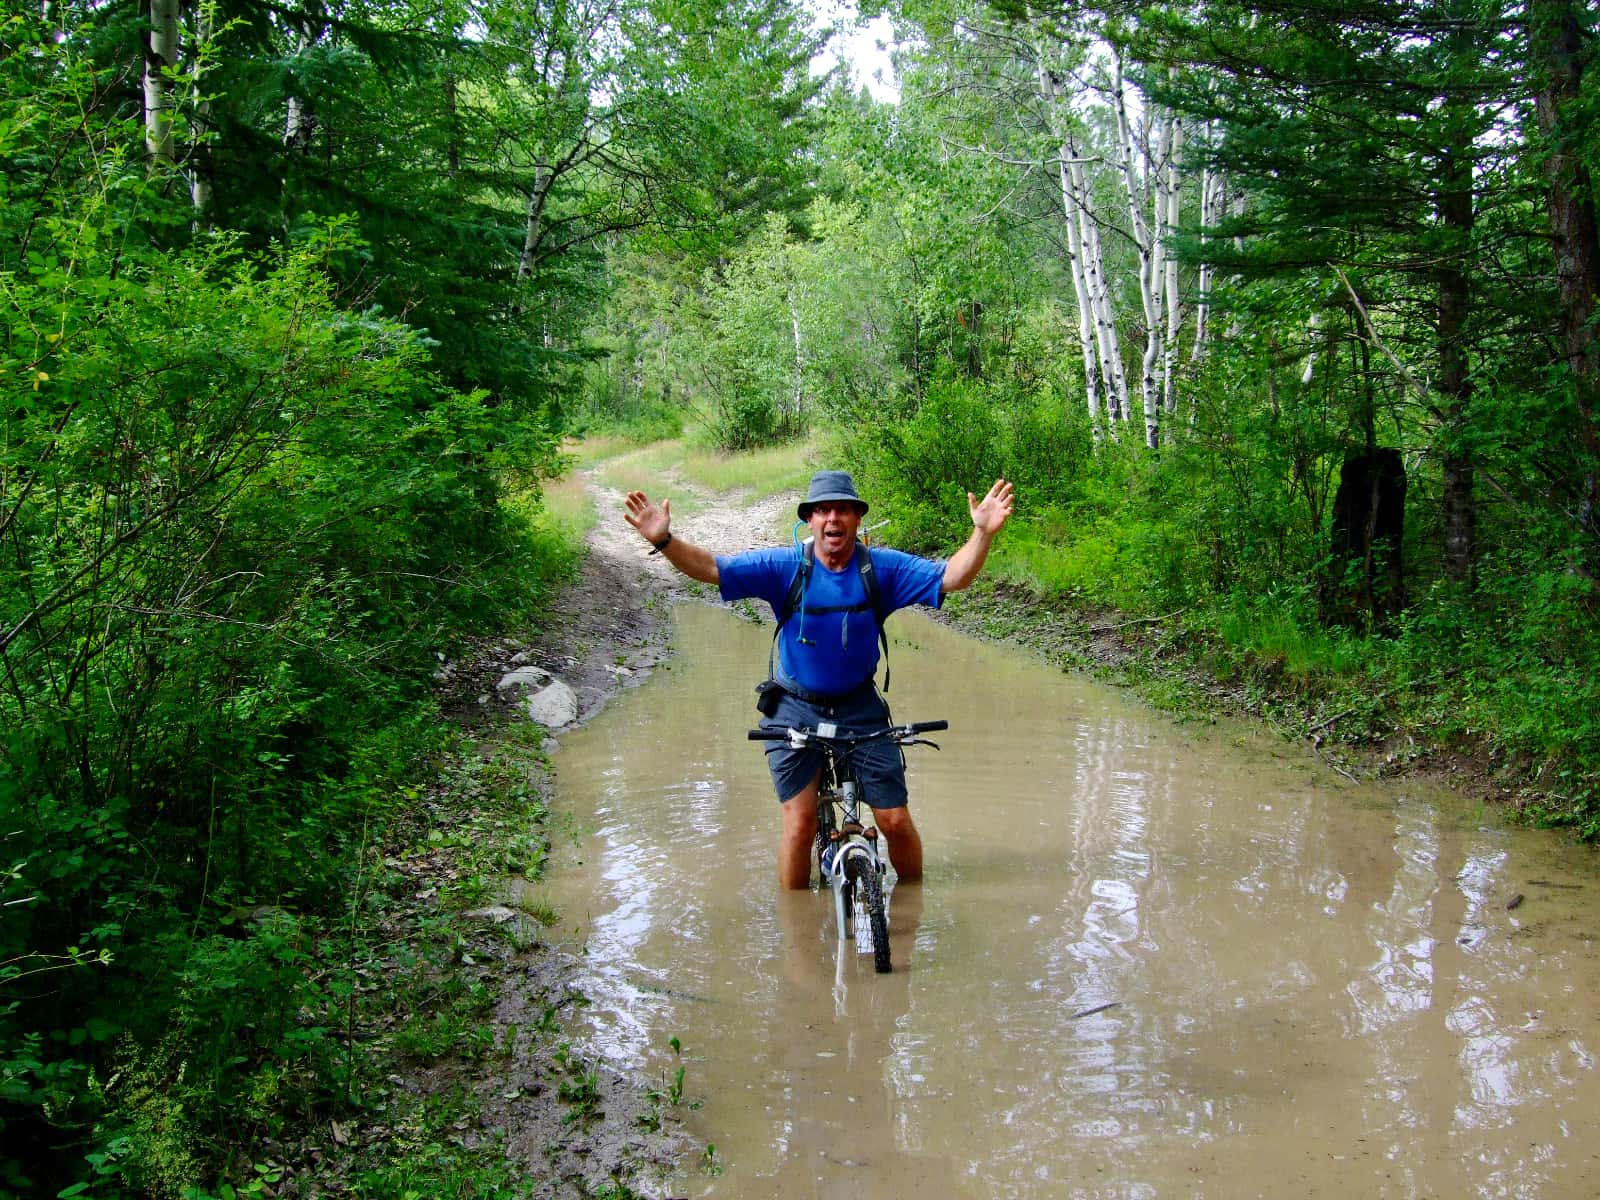 Man in blue shirt riding bicycle through deep water